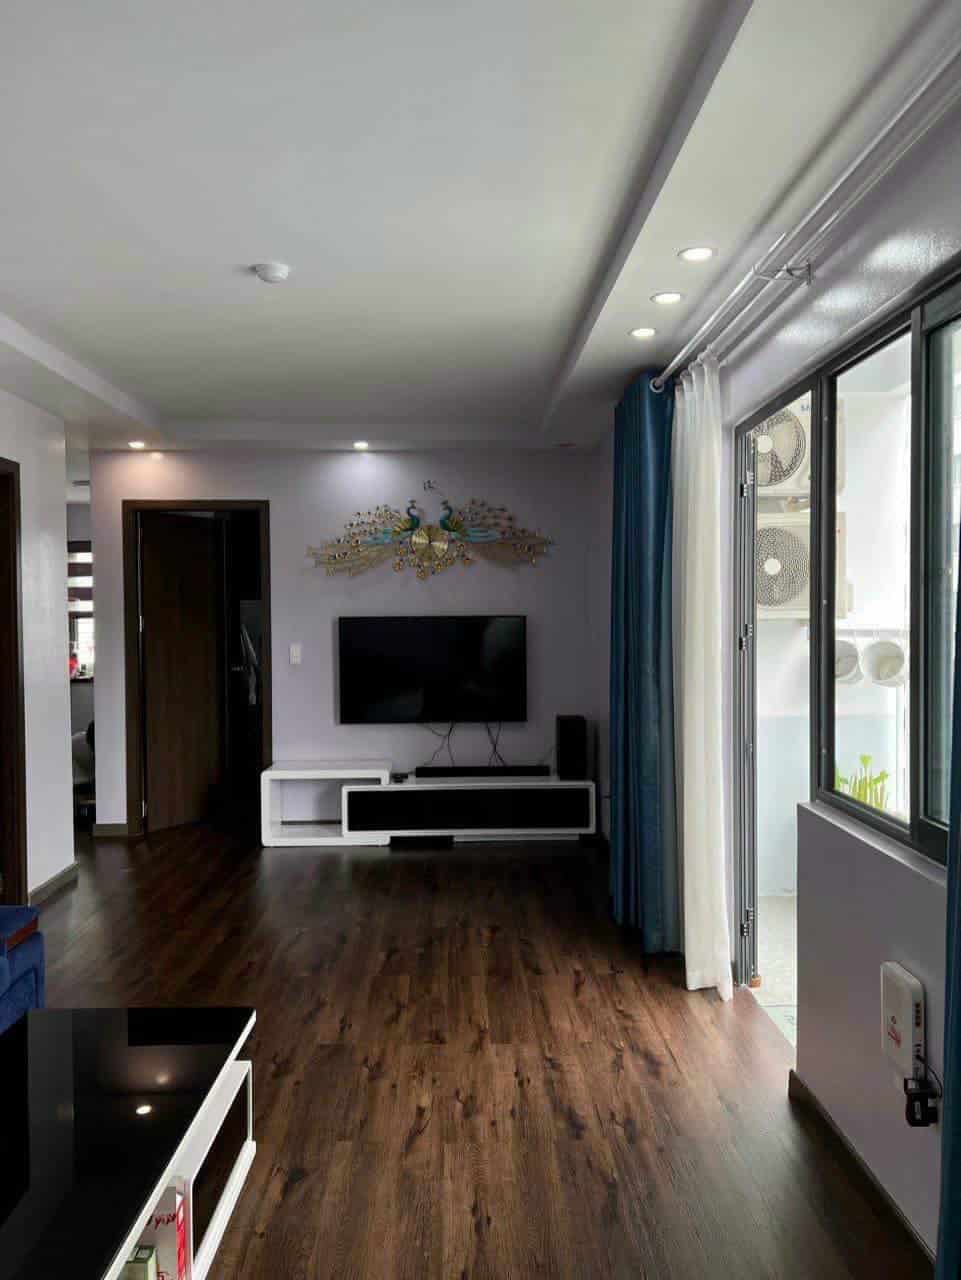 Cho thuê căn hộ chung cư HUD Phước Long CT3 2 phòng ngủ